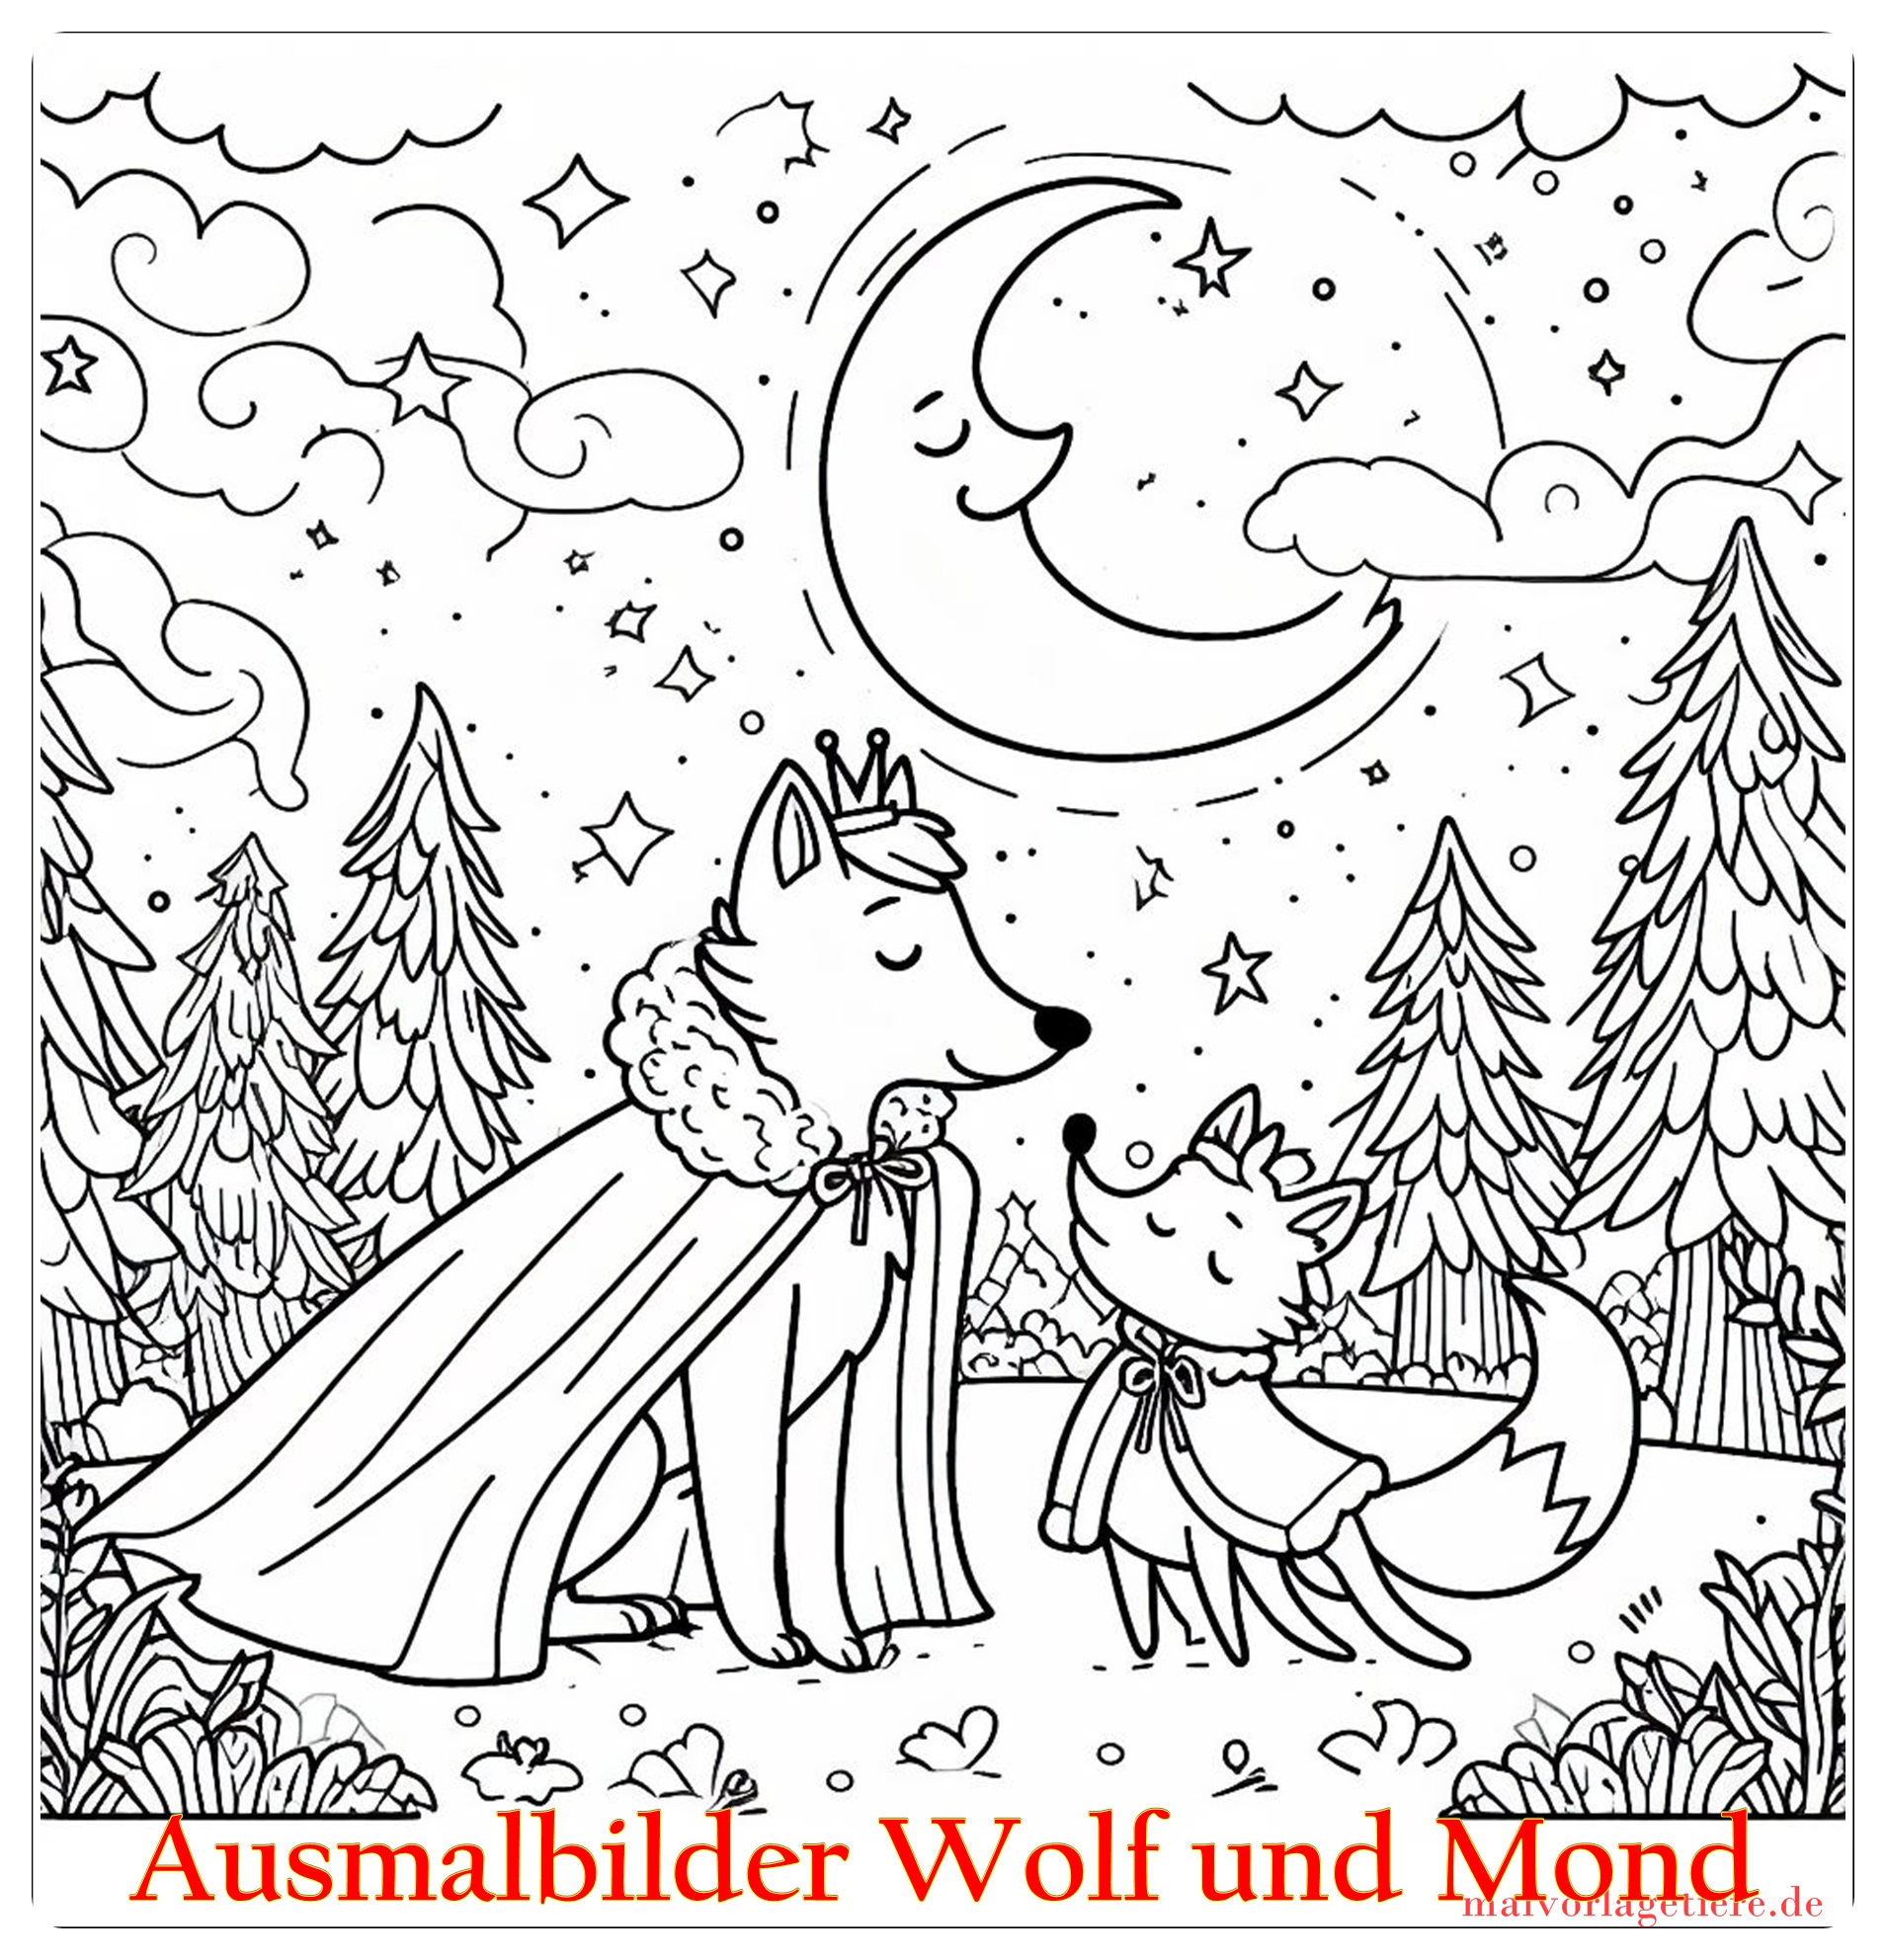 Ausmalbilder Wolf und Mond 01 by malvorlagetiere